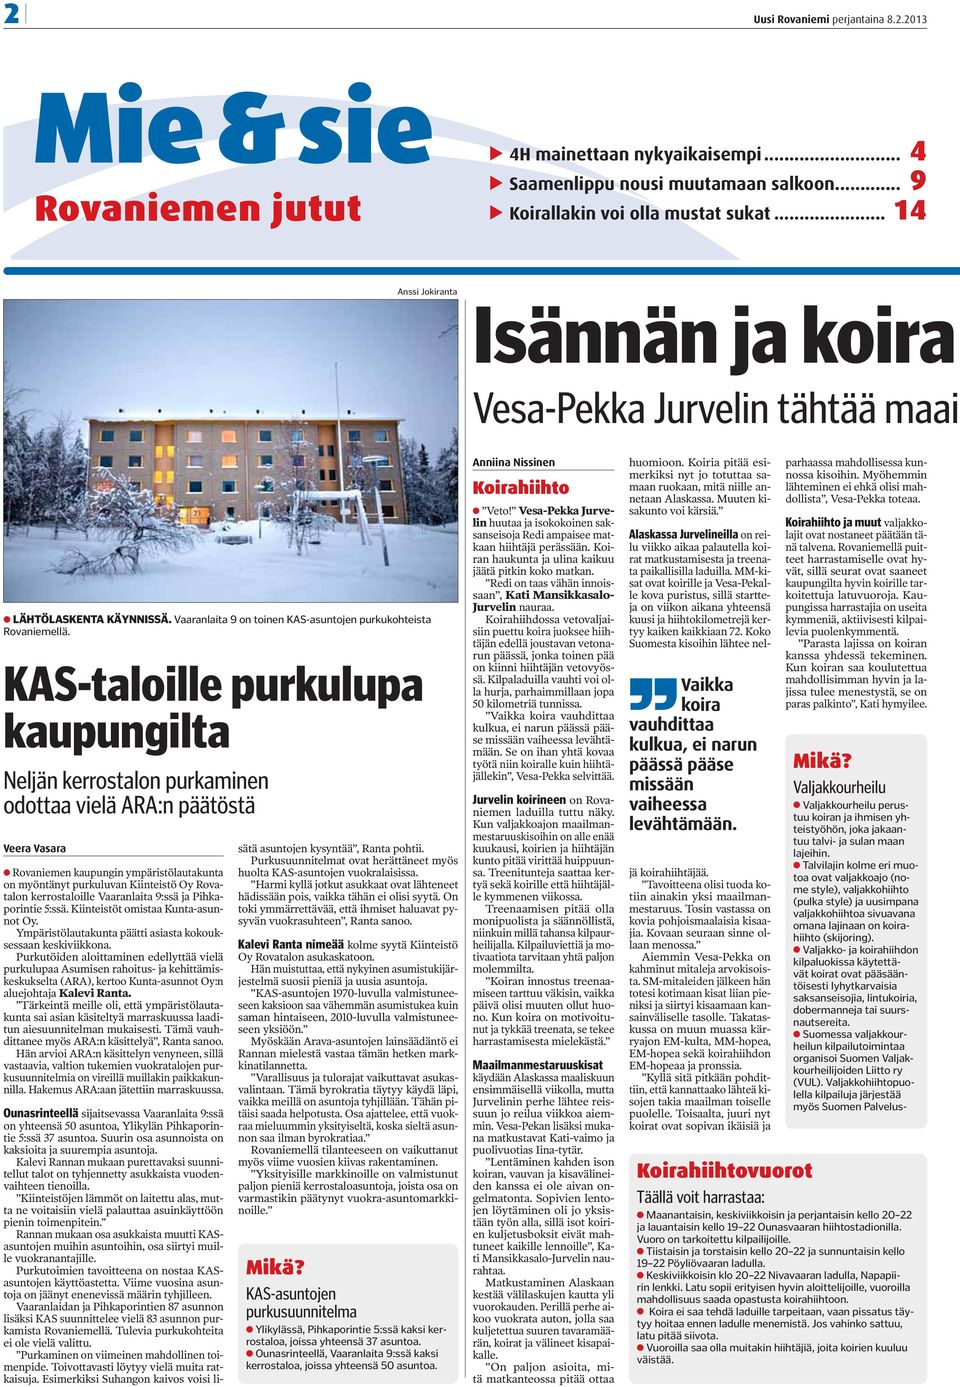 KAS-taloille purkulupa kaupungilta Neljän kerrostalon purkaminen odottaa vielä ARA:n päätöstä Veera Vasara Rovaniemen kaupungin ympäristölautakunta on myöntänyt purkuluvan Kiinteistö Oy Rovatalon